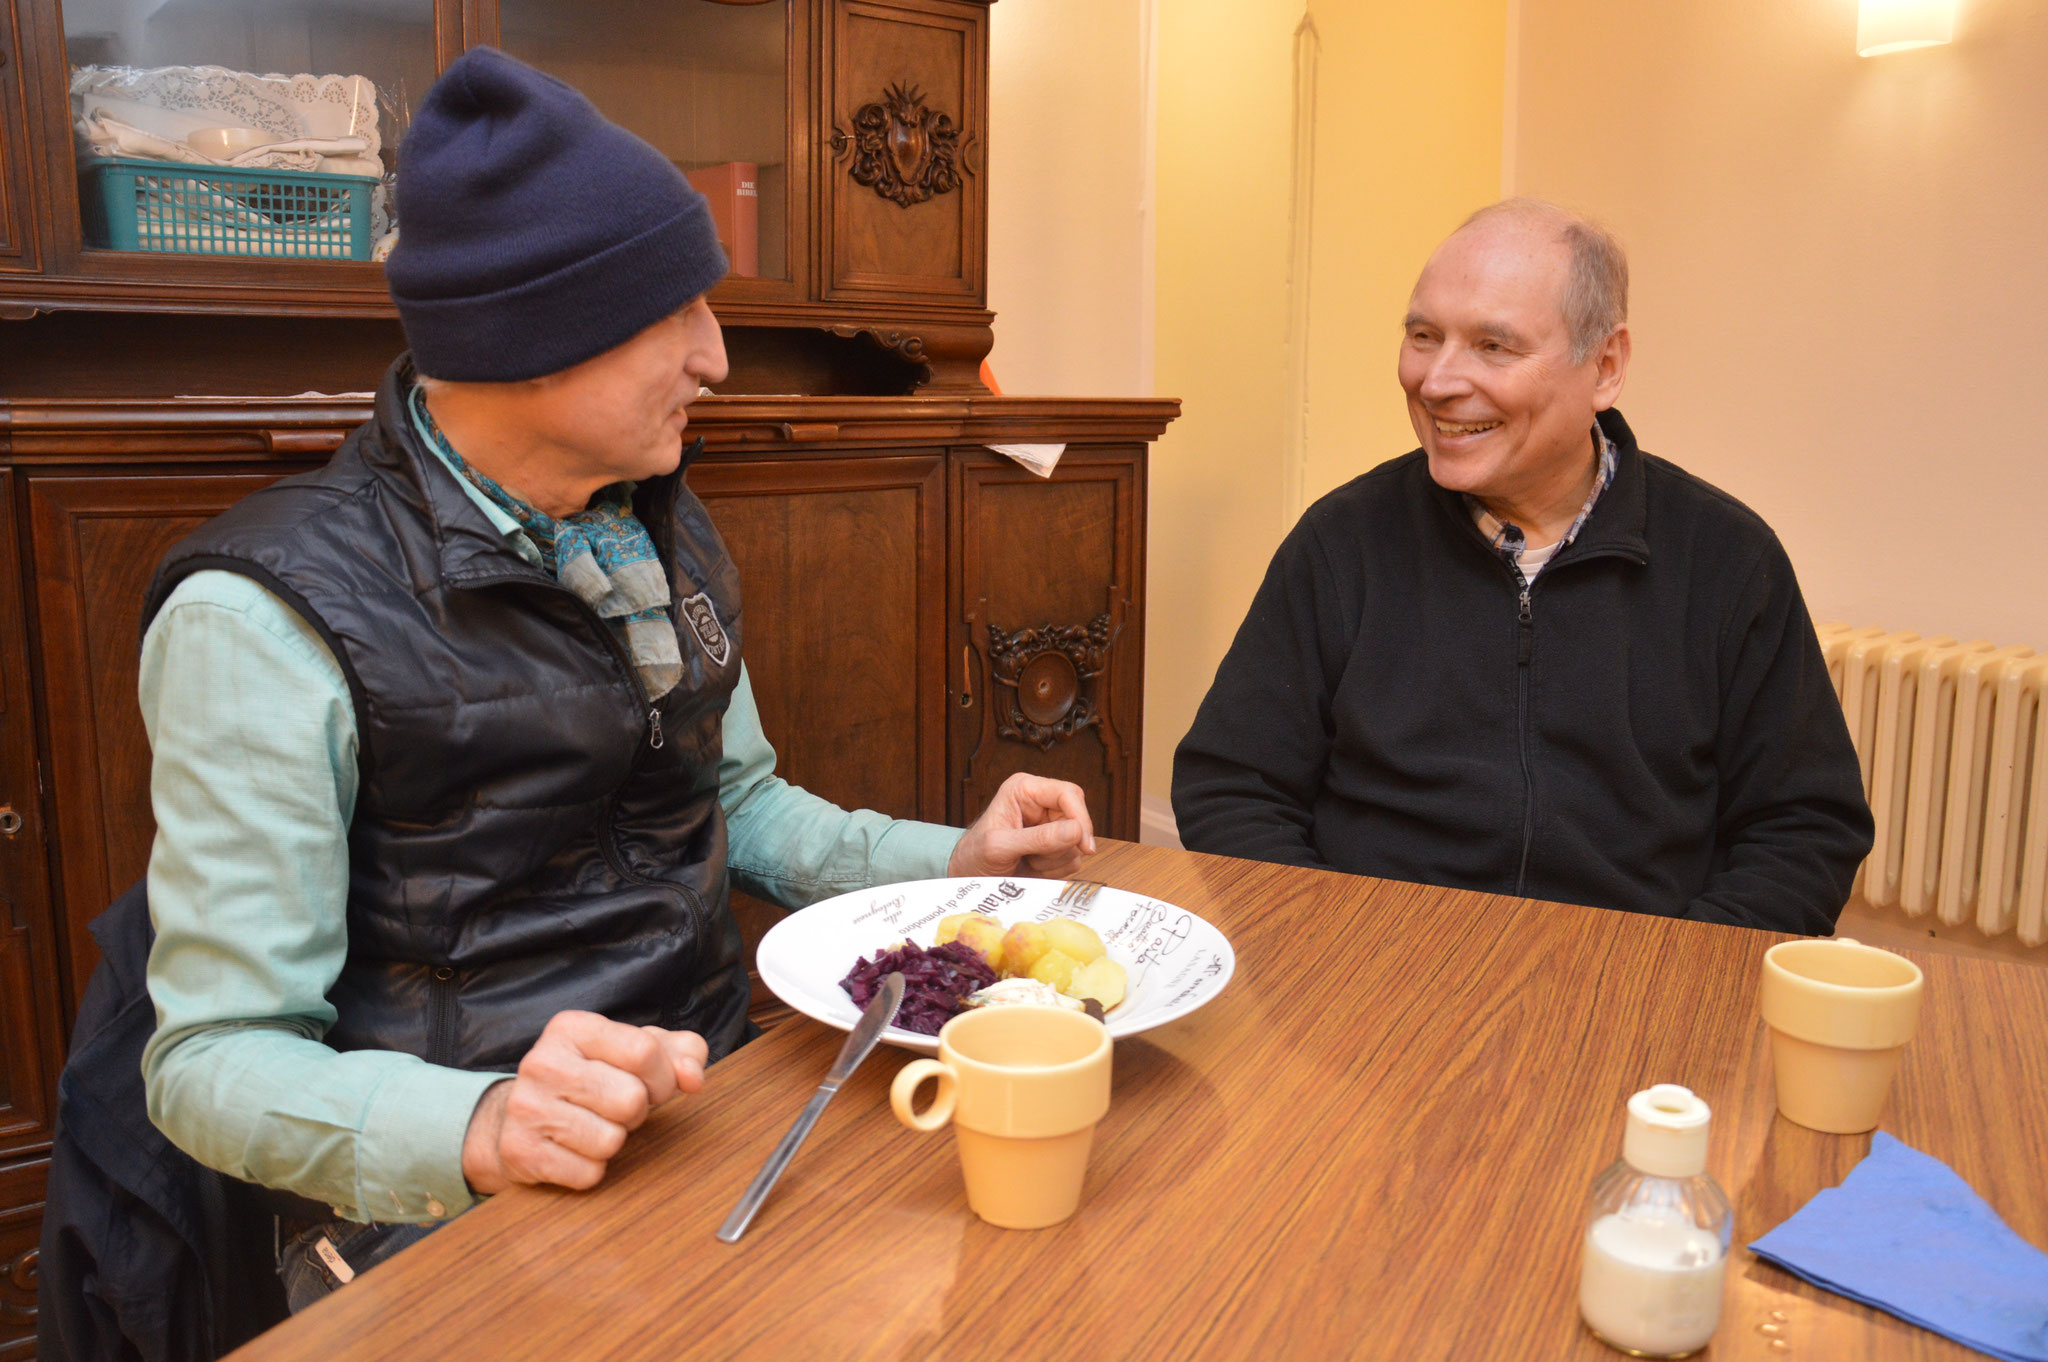 Pater Kalle Lenz mischt sich gerne unter die Gäste. Hier ist er im Gespräch mit Andreas. Foto: Marius Thöne